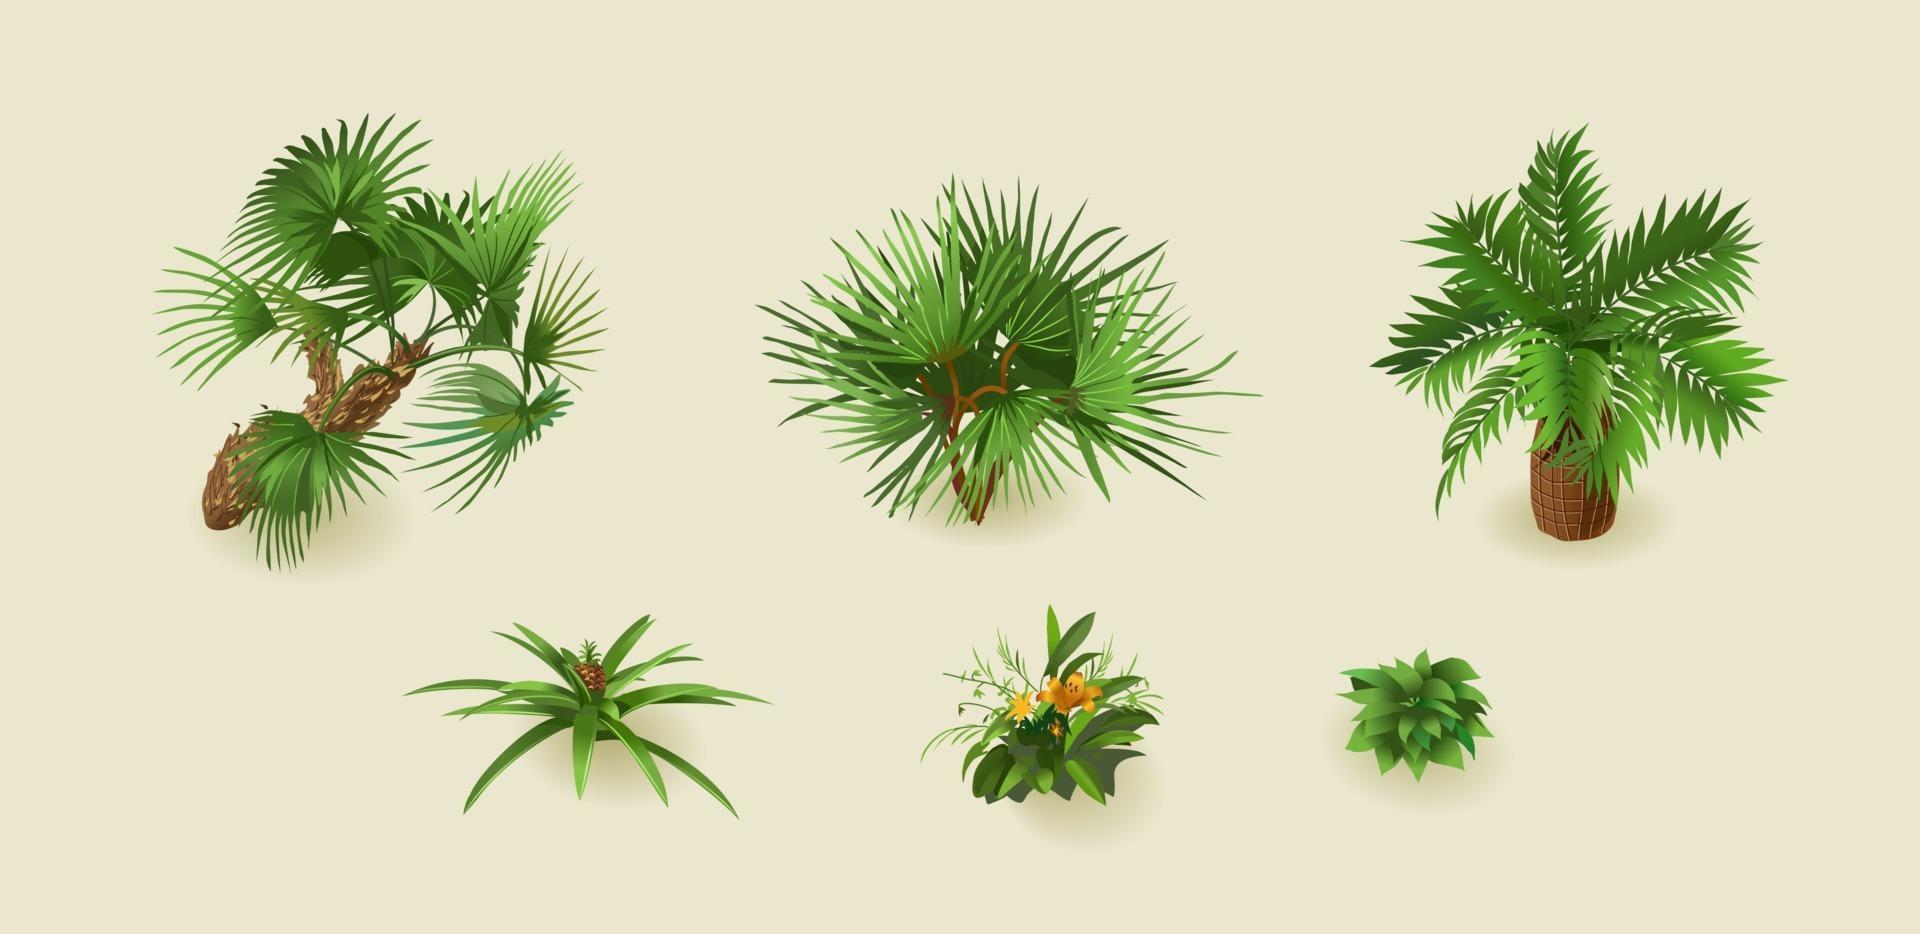 piante di palma tropicali su uno sfondo chiaro per l'interior design in isometrica. illustrazione vettoriale